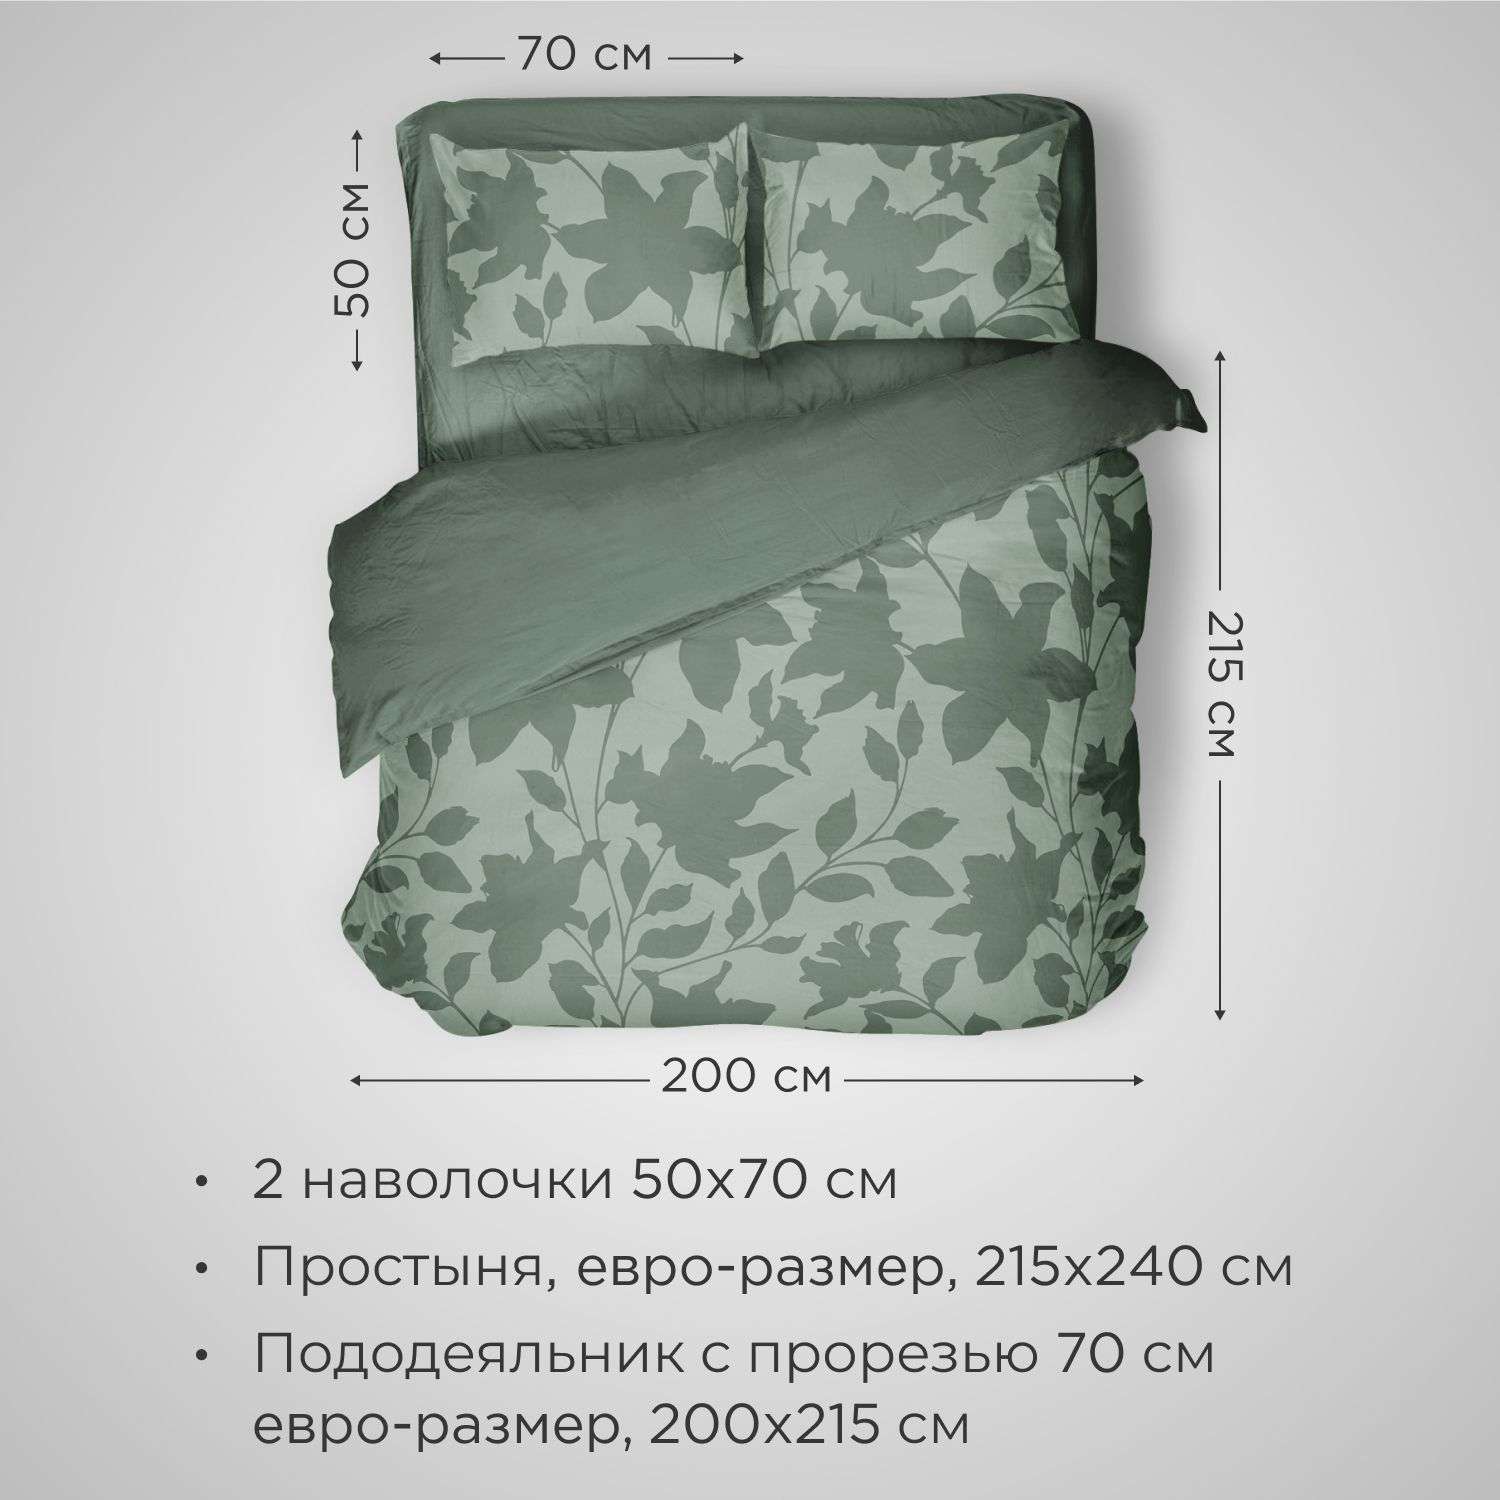 Комплект постельного белья SONNO URBAN FLOWERS евро-размер цвет Цветы тёмно-оливковый - фото 2